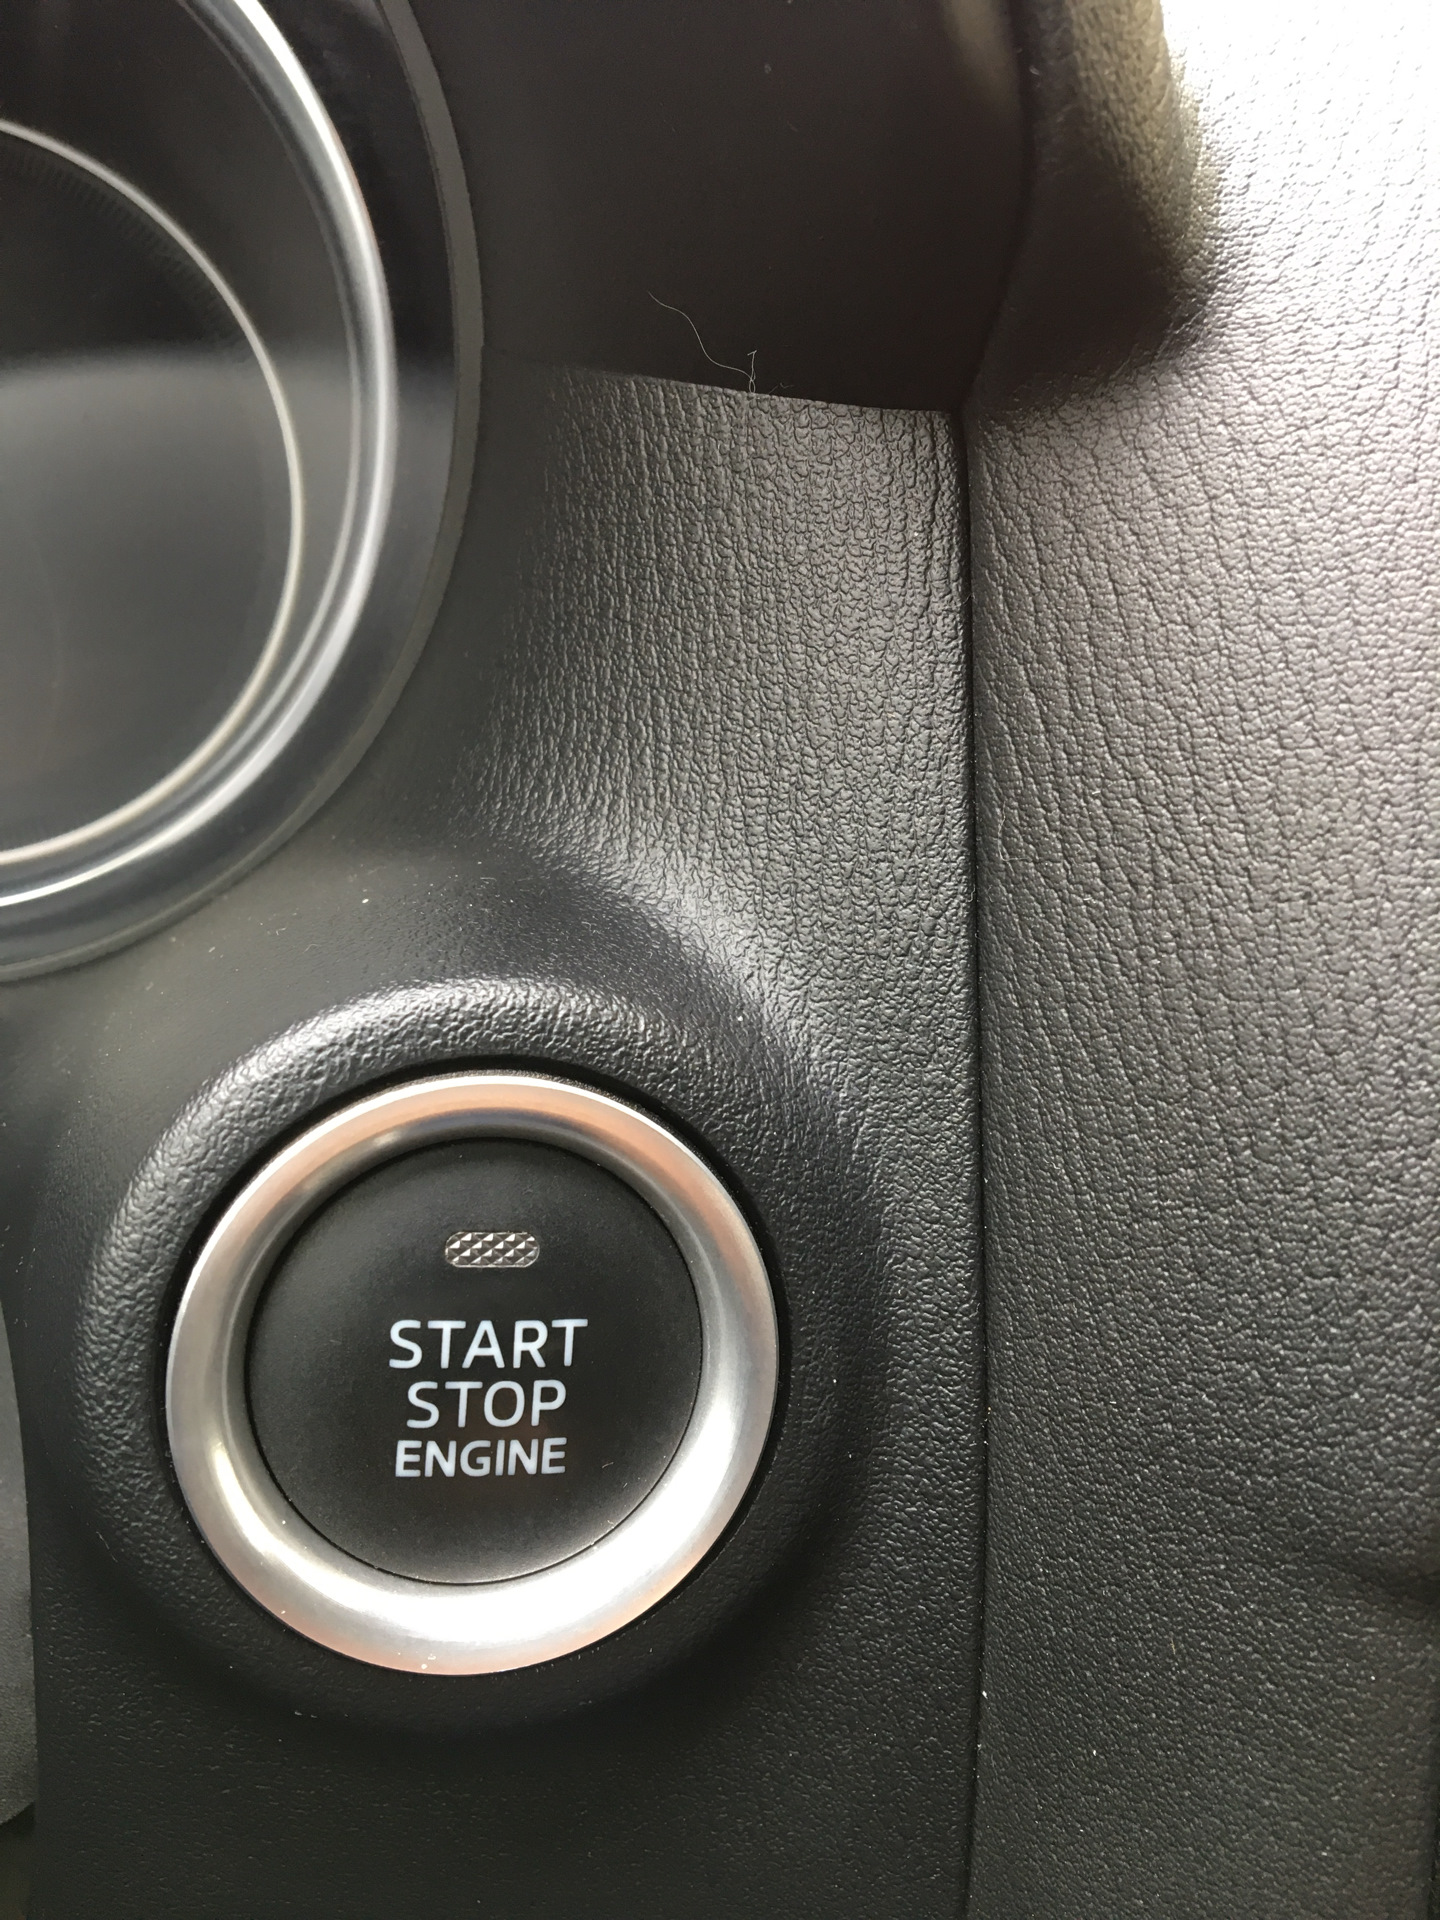 Мазда сх5 старт стоп. Кнопка старт стоп Mazda CX 5. Мазда СХ-5 кнопка старт стоп. Старт кнопка в мазде СХ-5. Кнопка пуска Mazda CX-5.